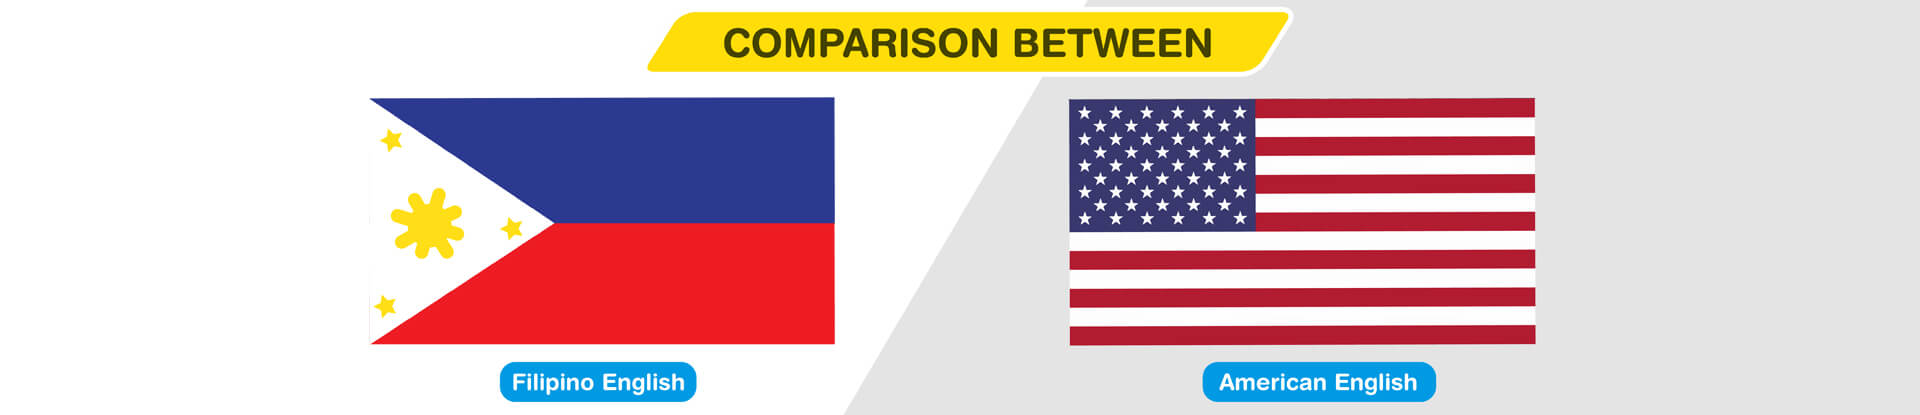 Crazy Comparison: Filipino English and American English